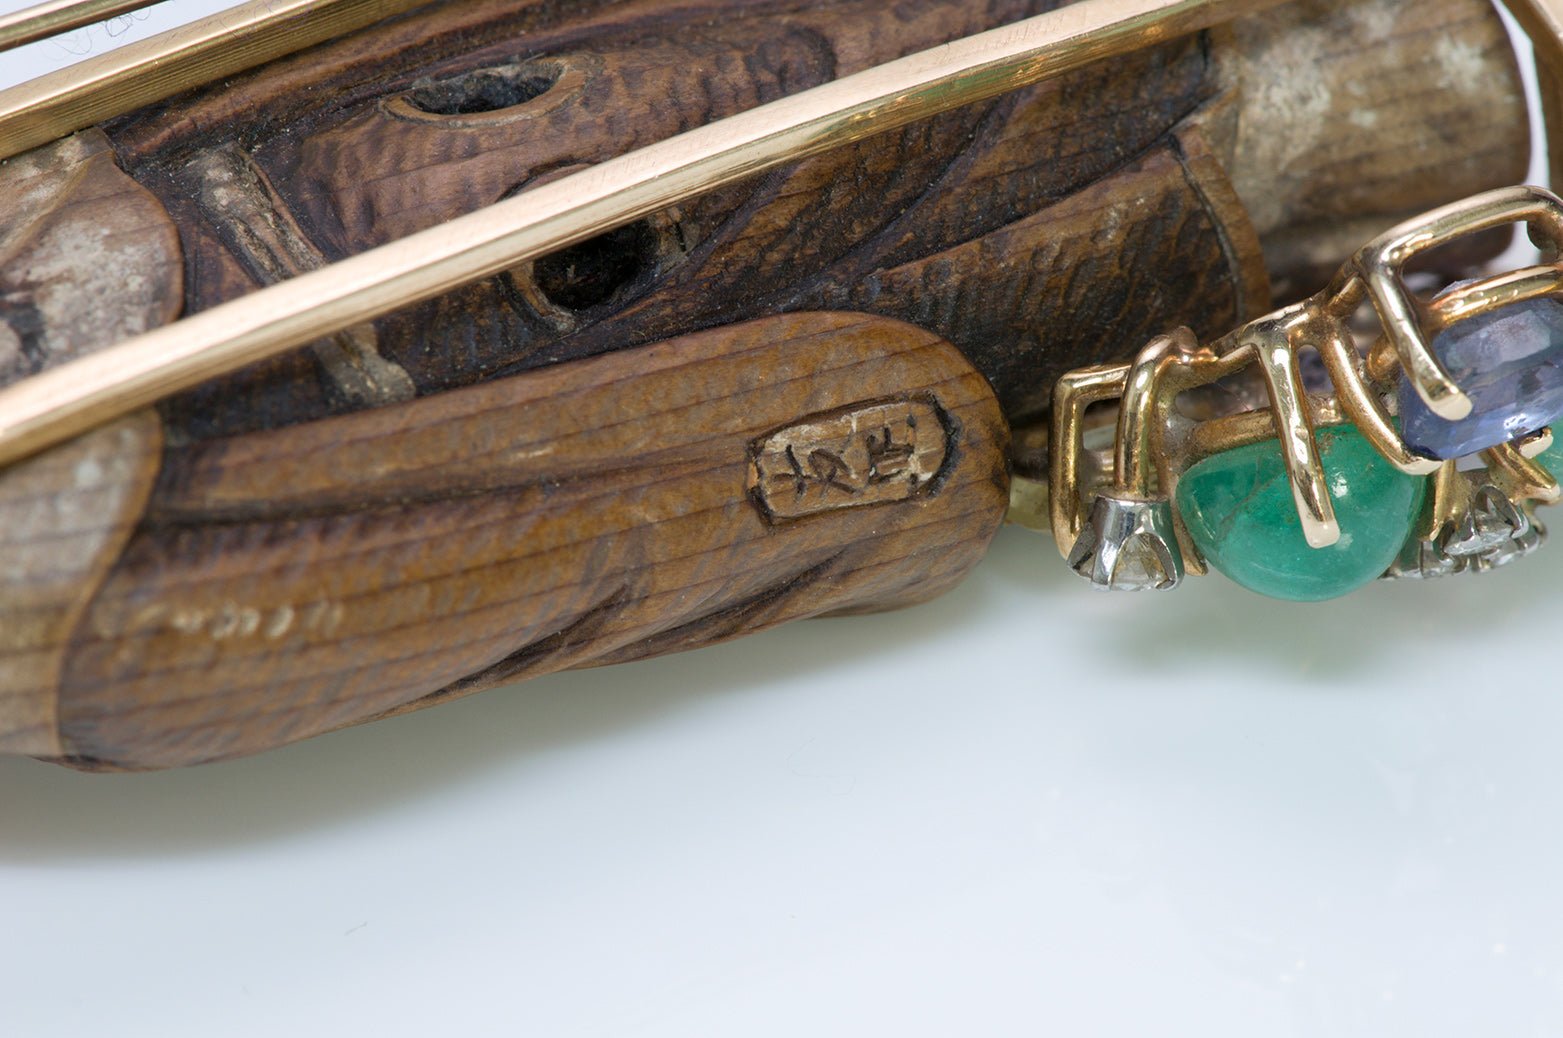 Vintage Gemstone & Japanese Carved Wood Wolf Clip Brooch